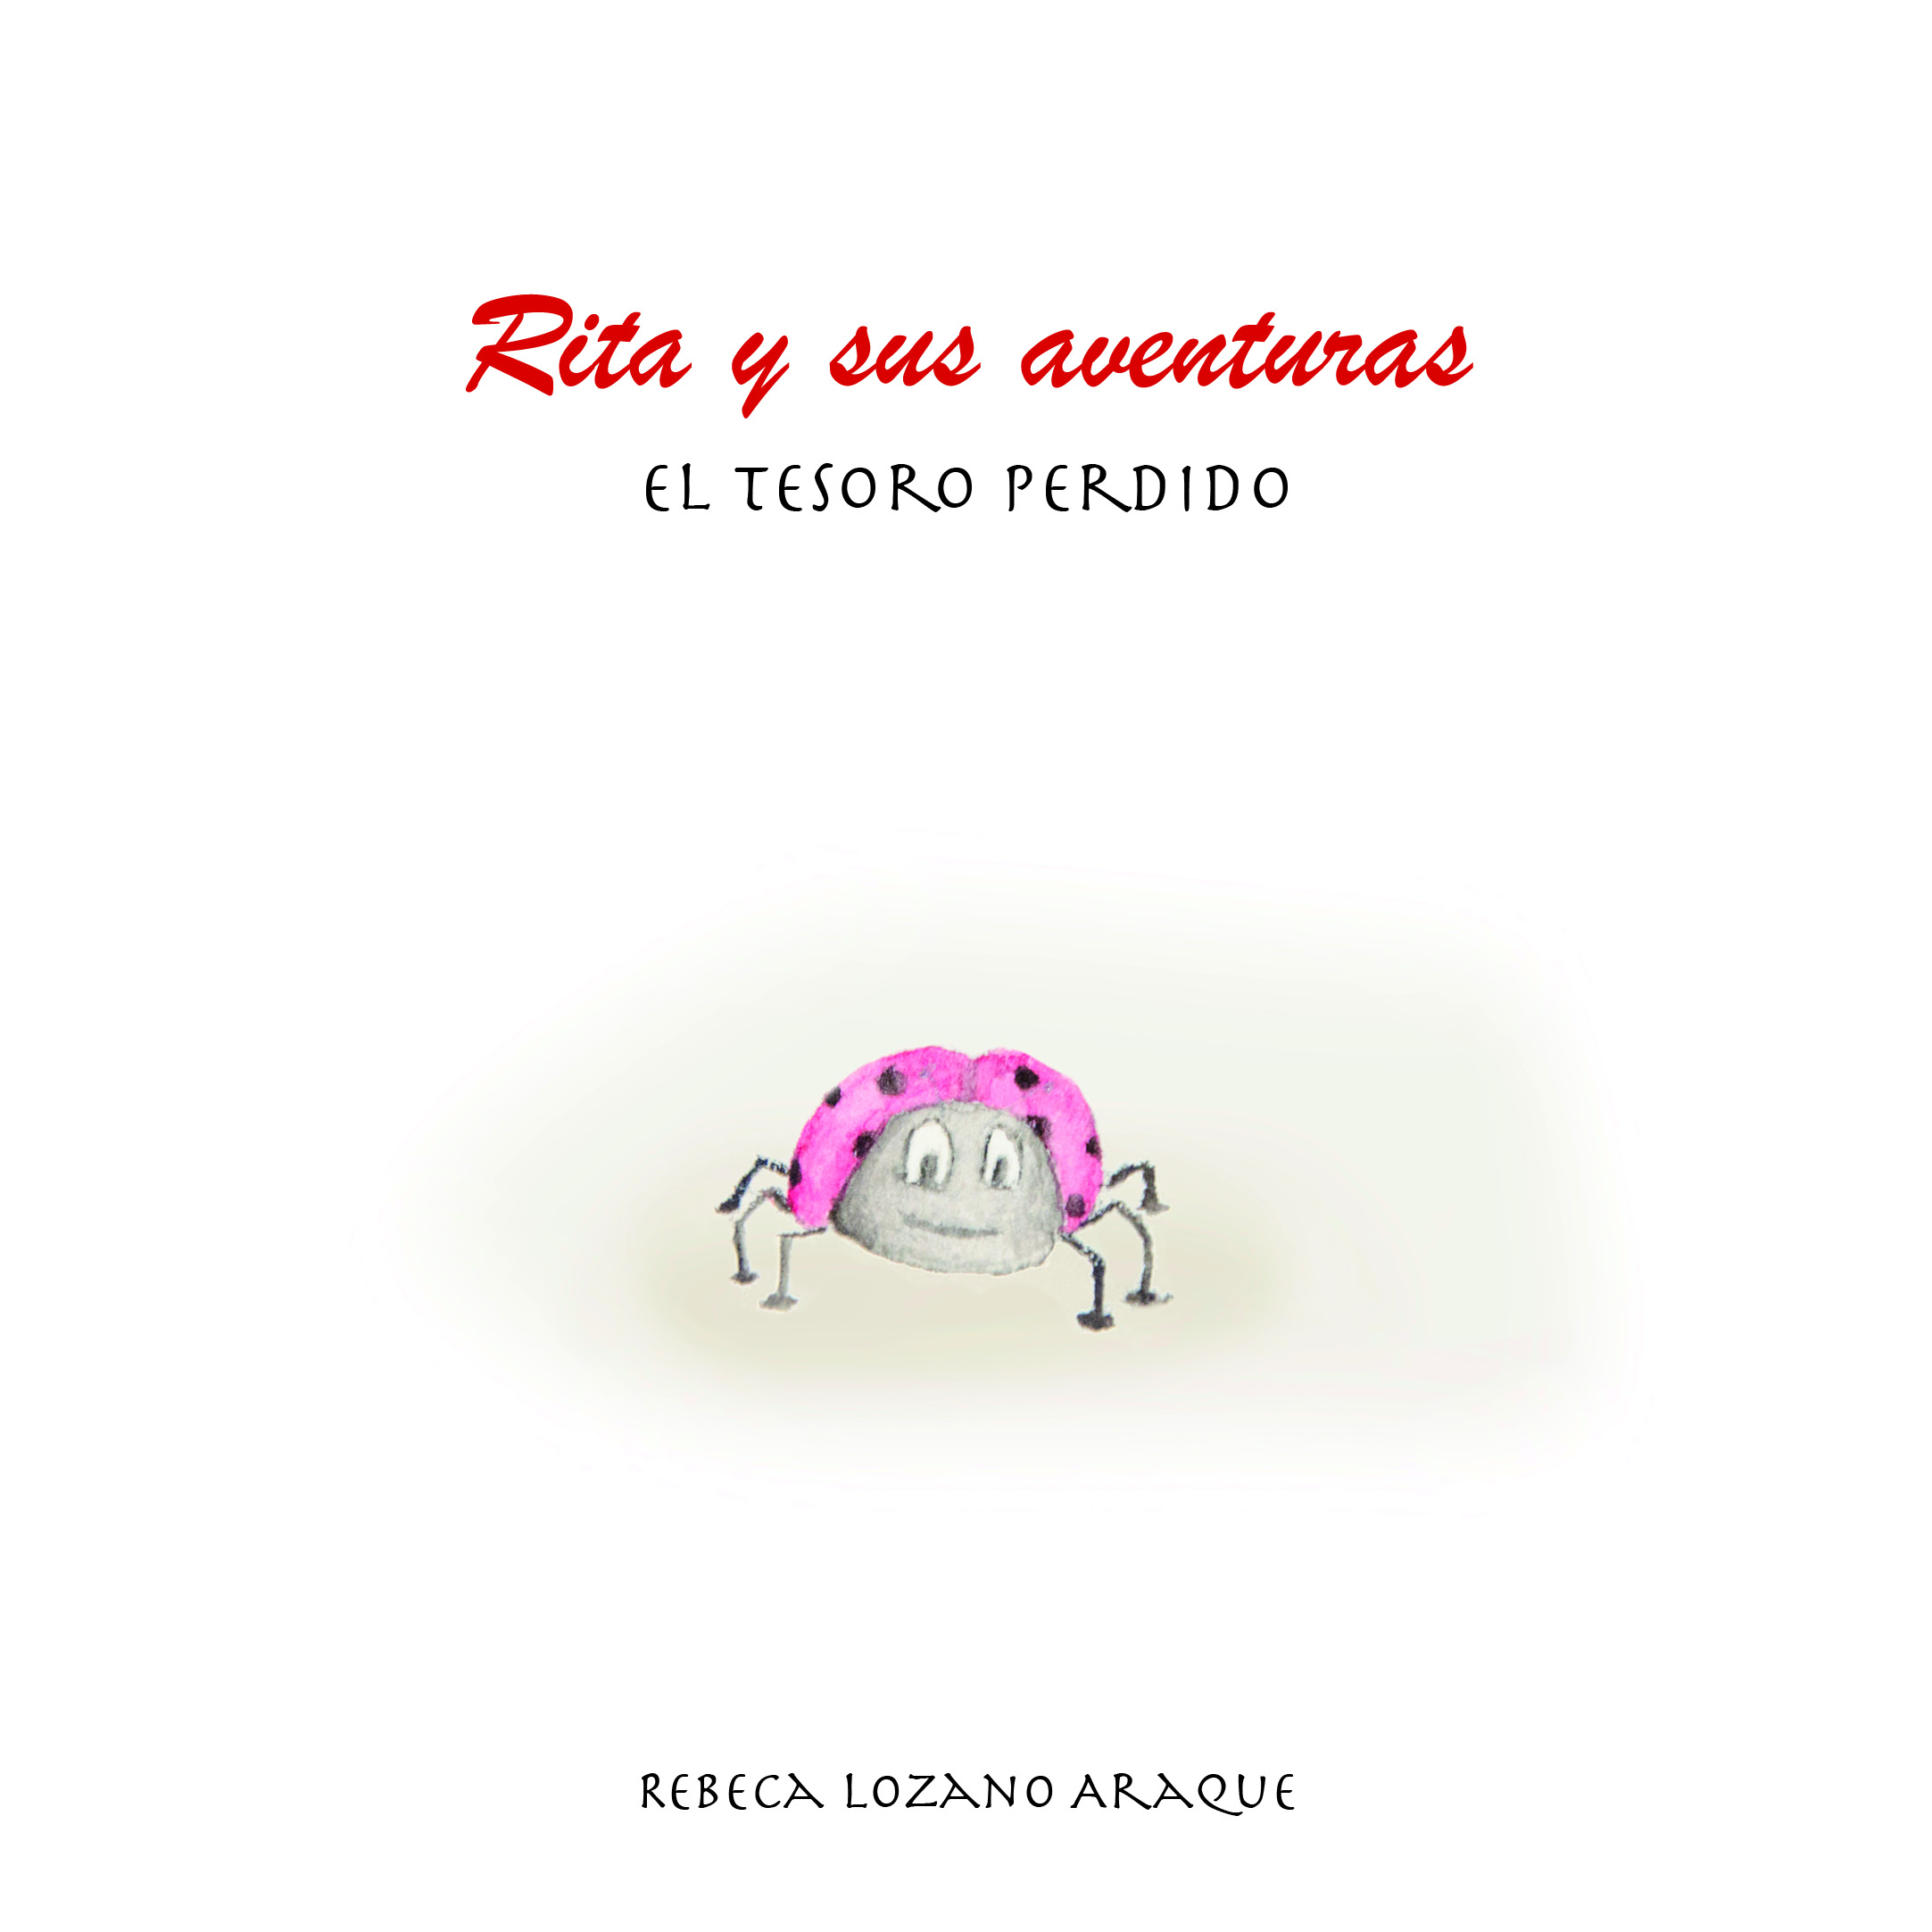 Rita y sus aventuras